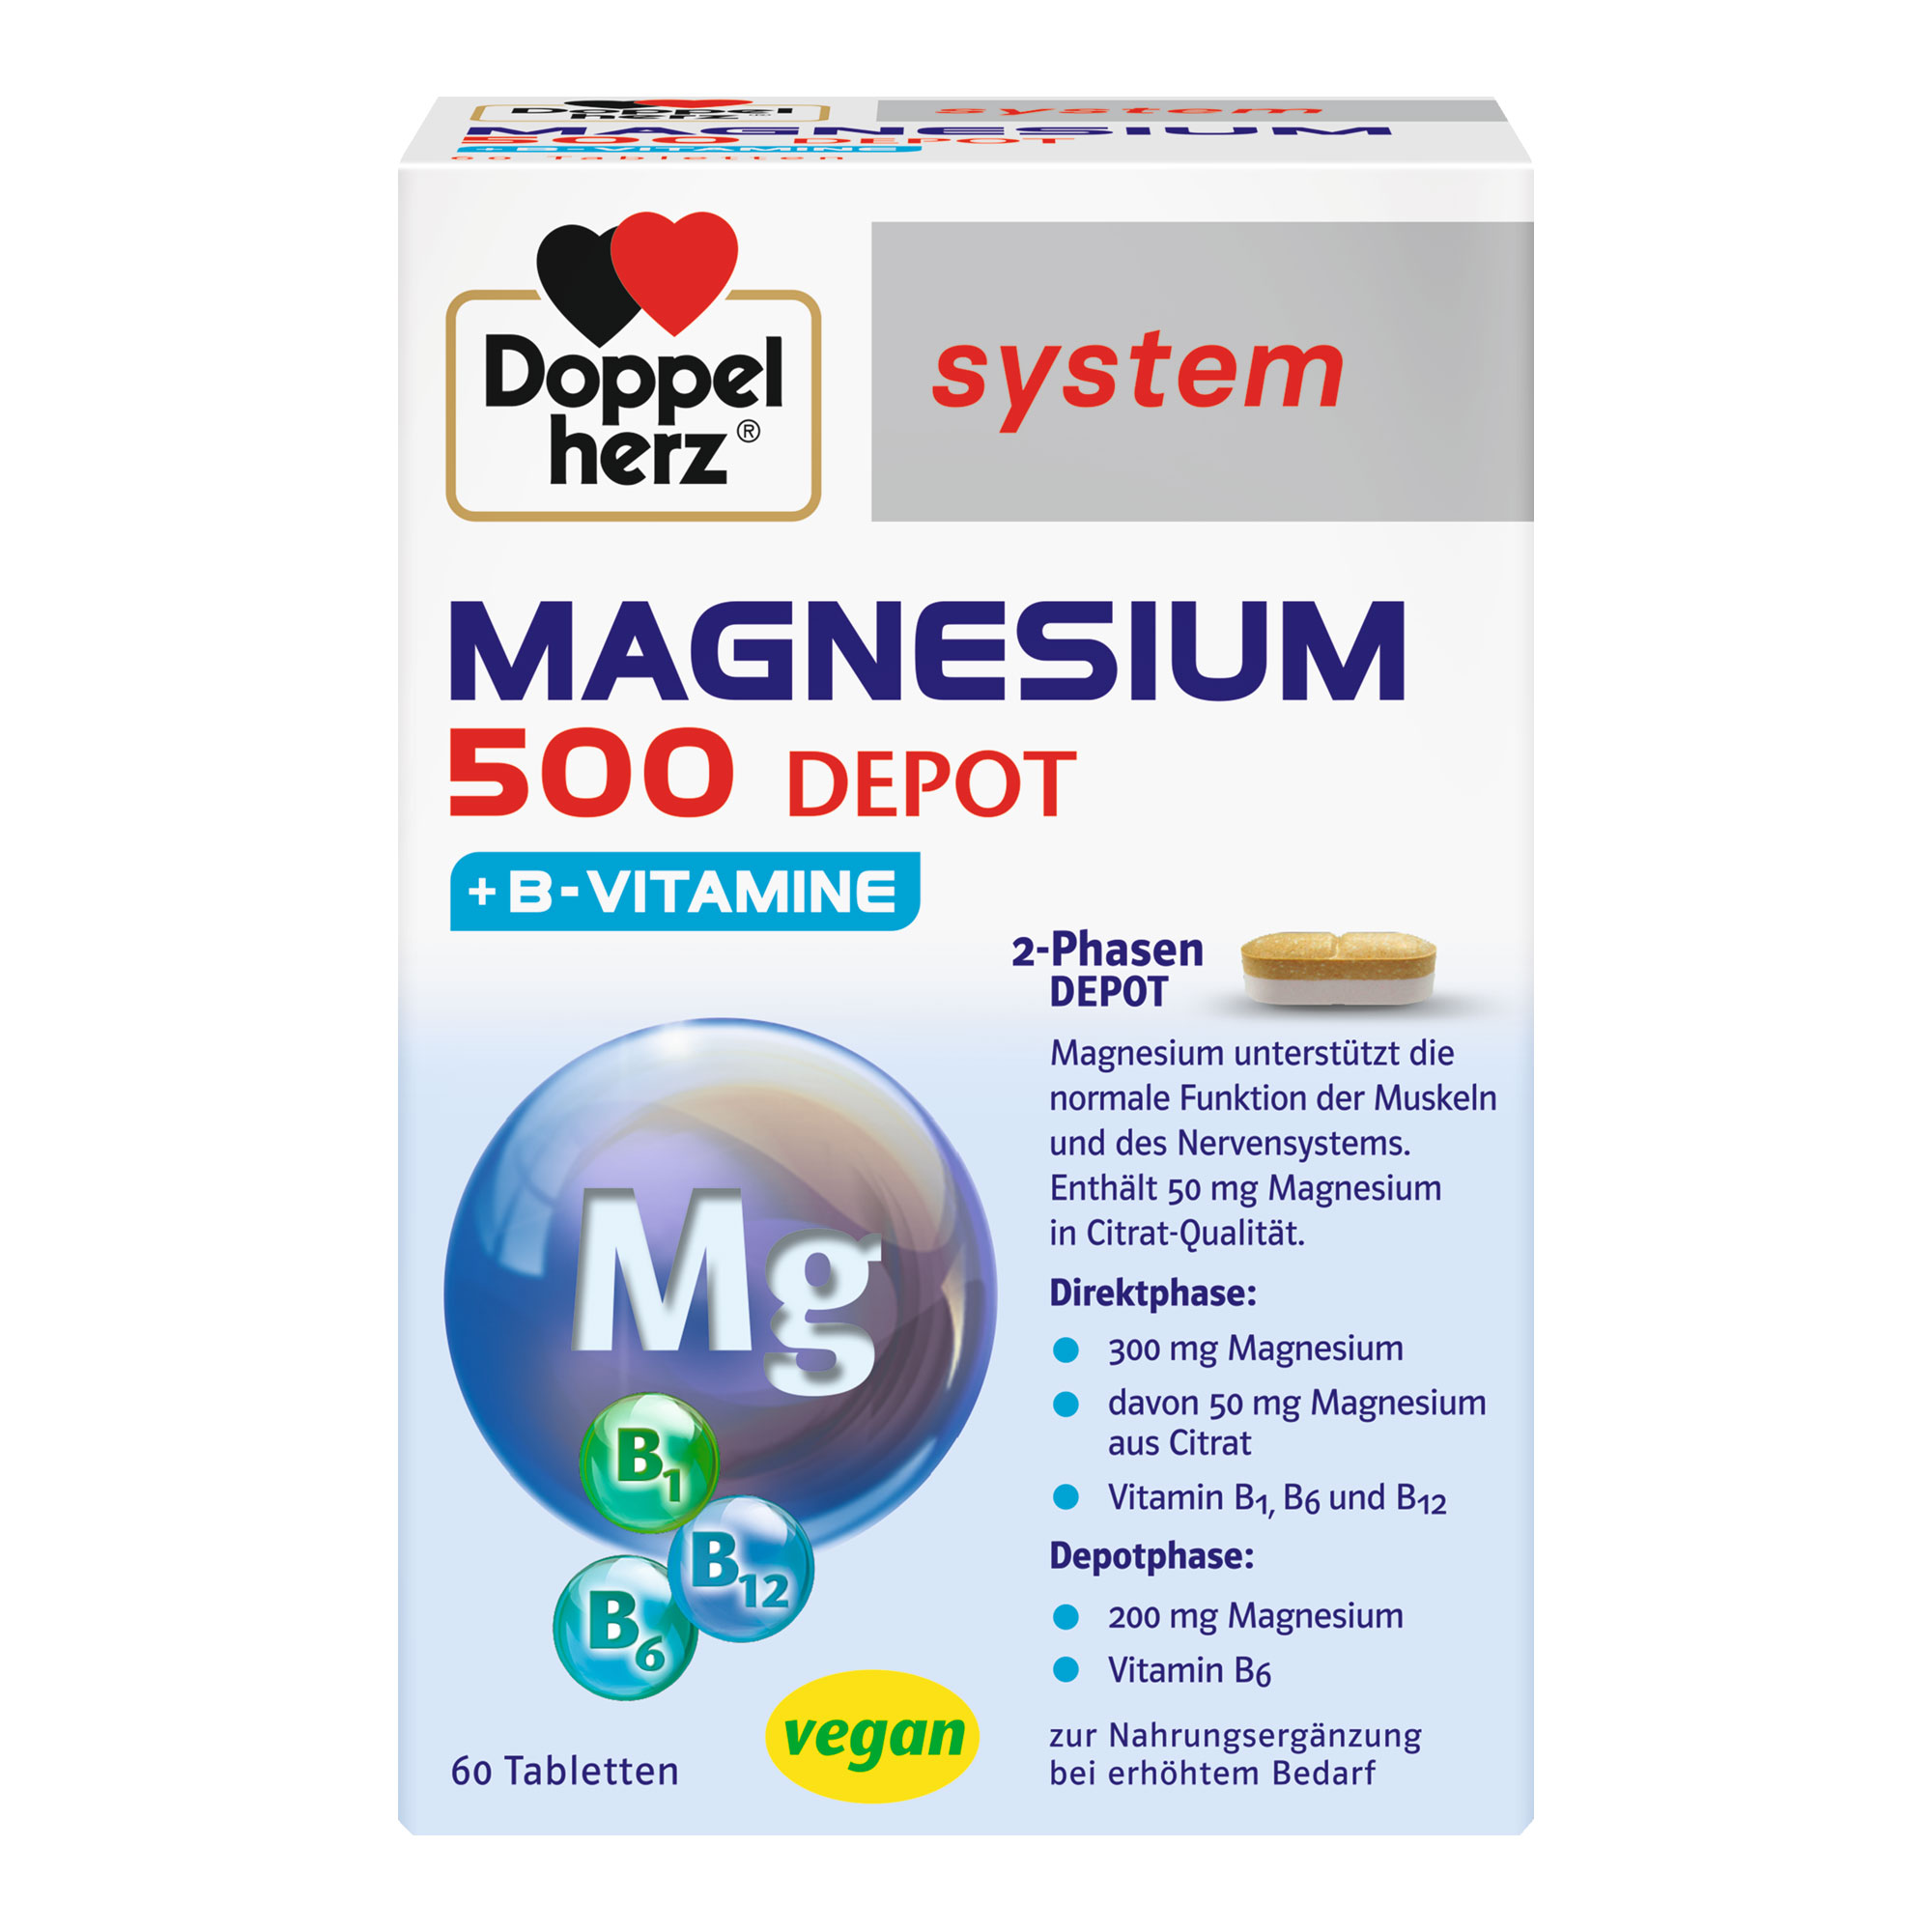 Nahrungsergänzungsmittel mit Magnesium und Vitamin B1, B6 und B12.